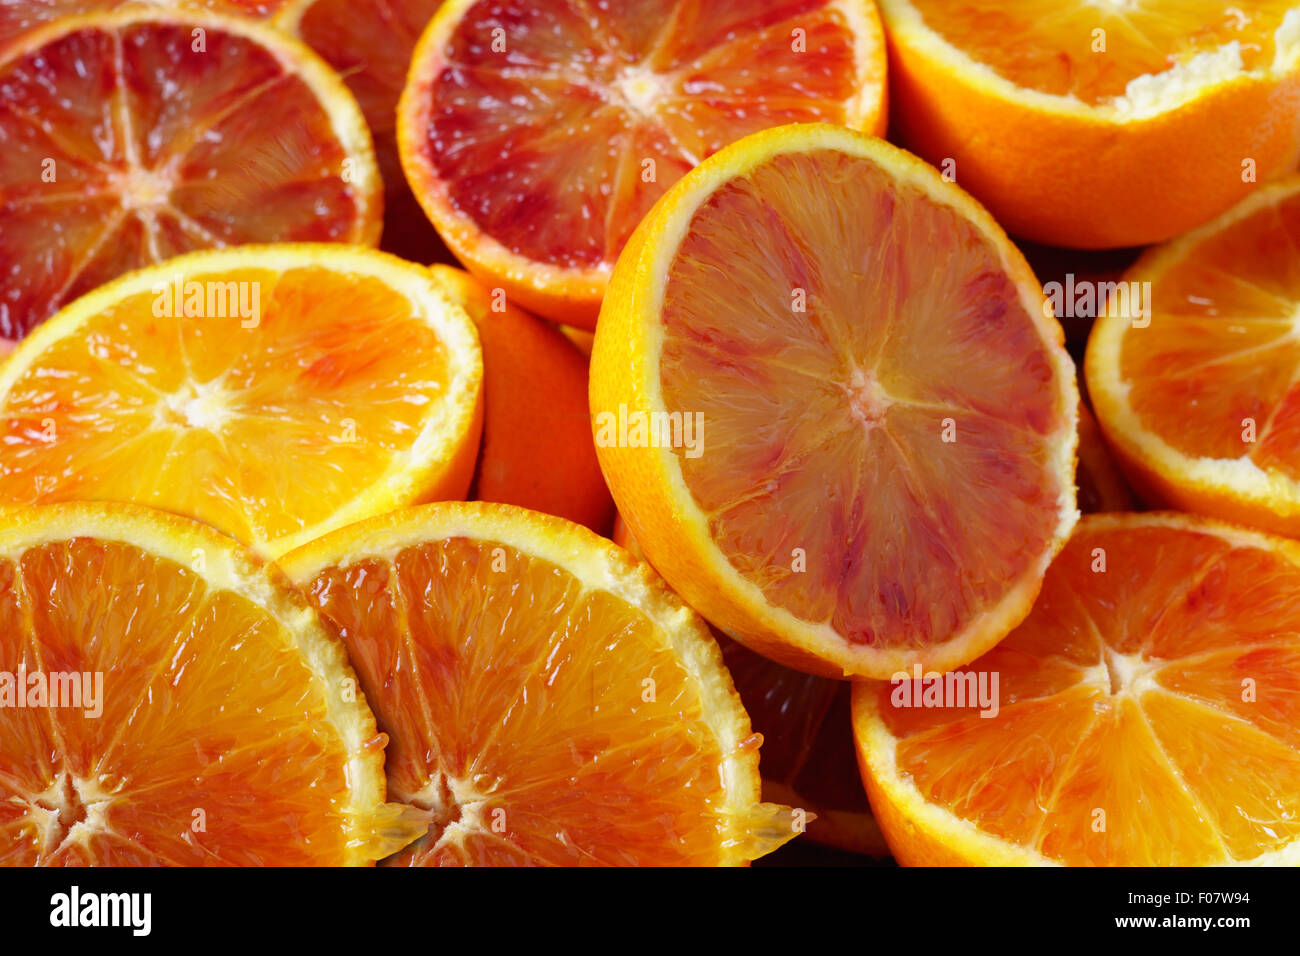 Les oranges siciliennes agrumes siciliens, fond blanc libre Banque D'Images